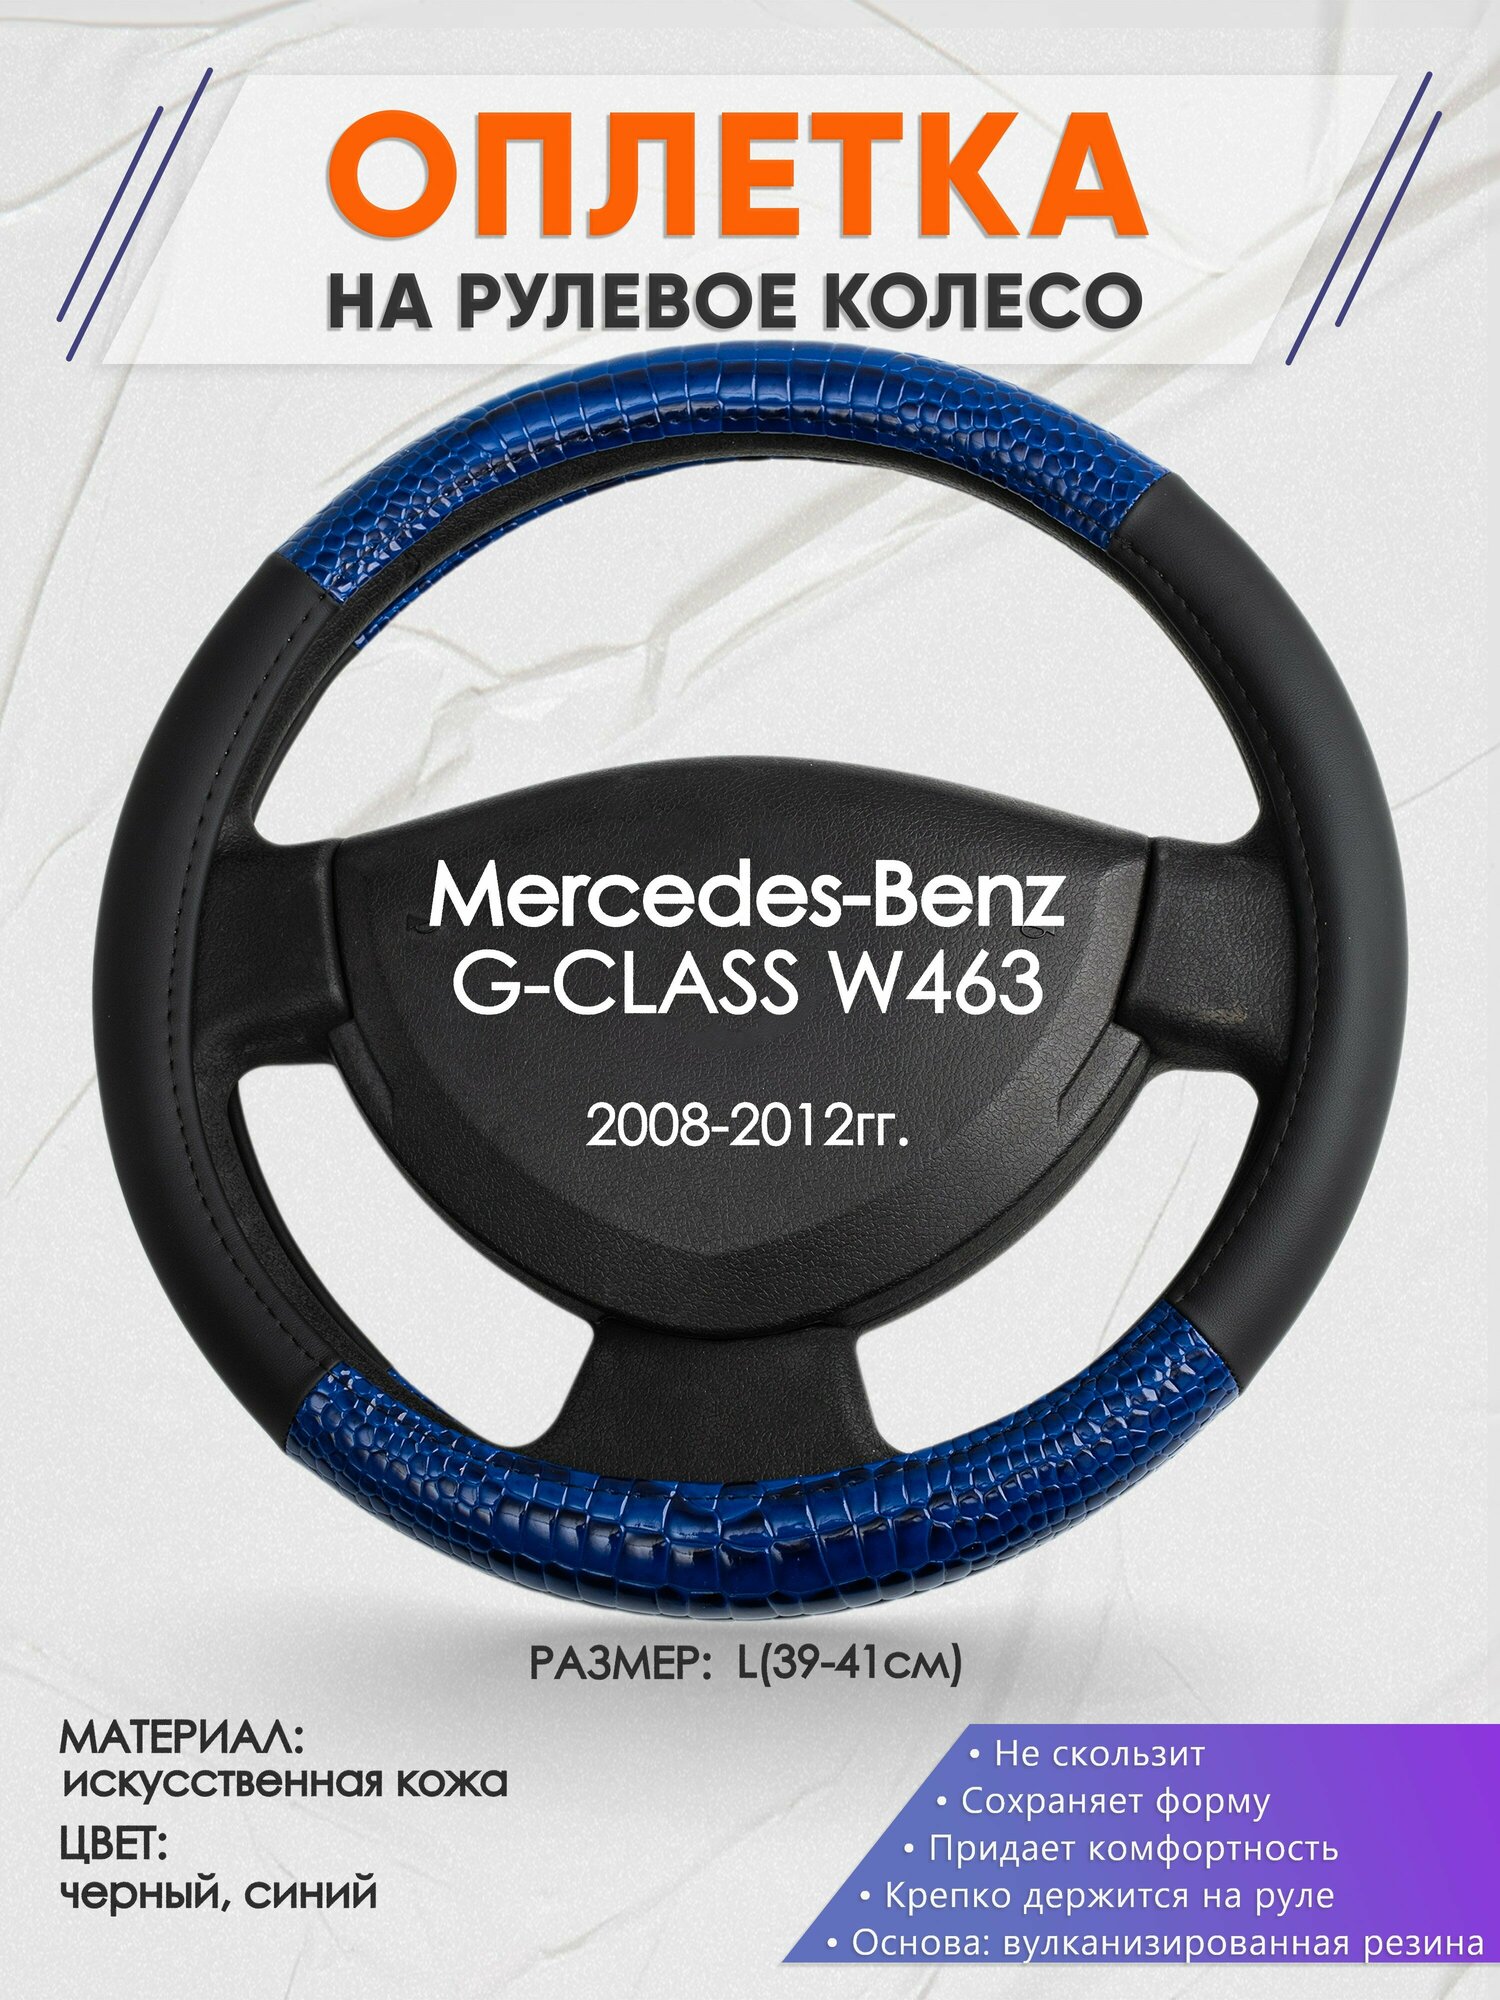 Оплетка на руль для Mercedes-Benz G-CLASS W463(Мерседес Бенц Г Класс) 2008-2012, L(39-41см), Искусственная кожа 82